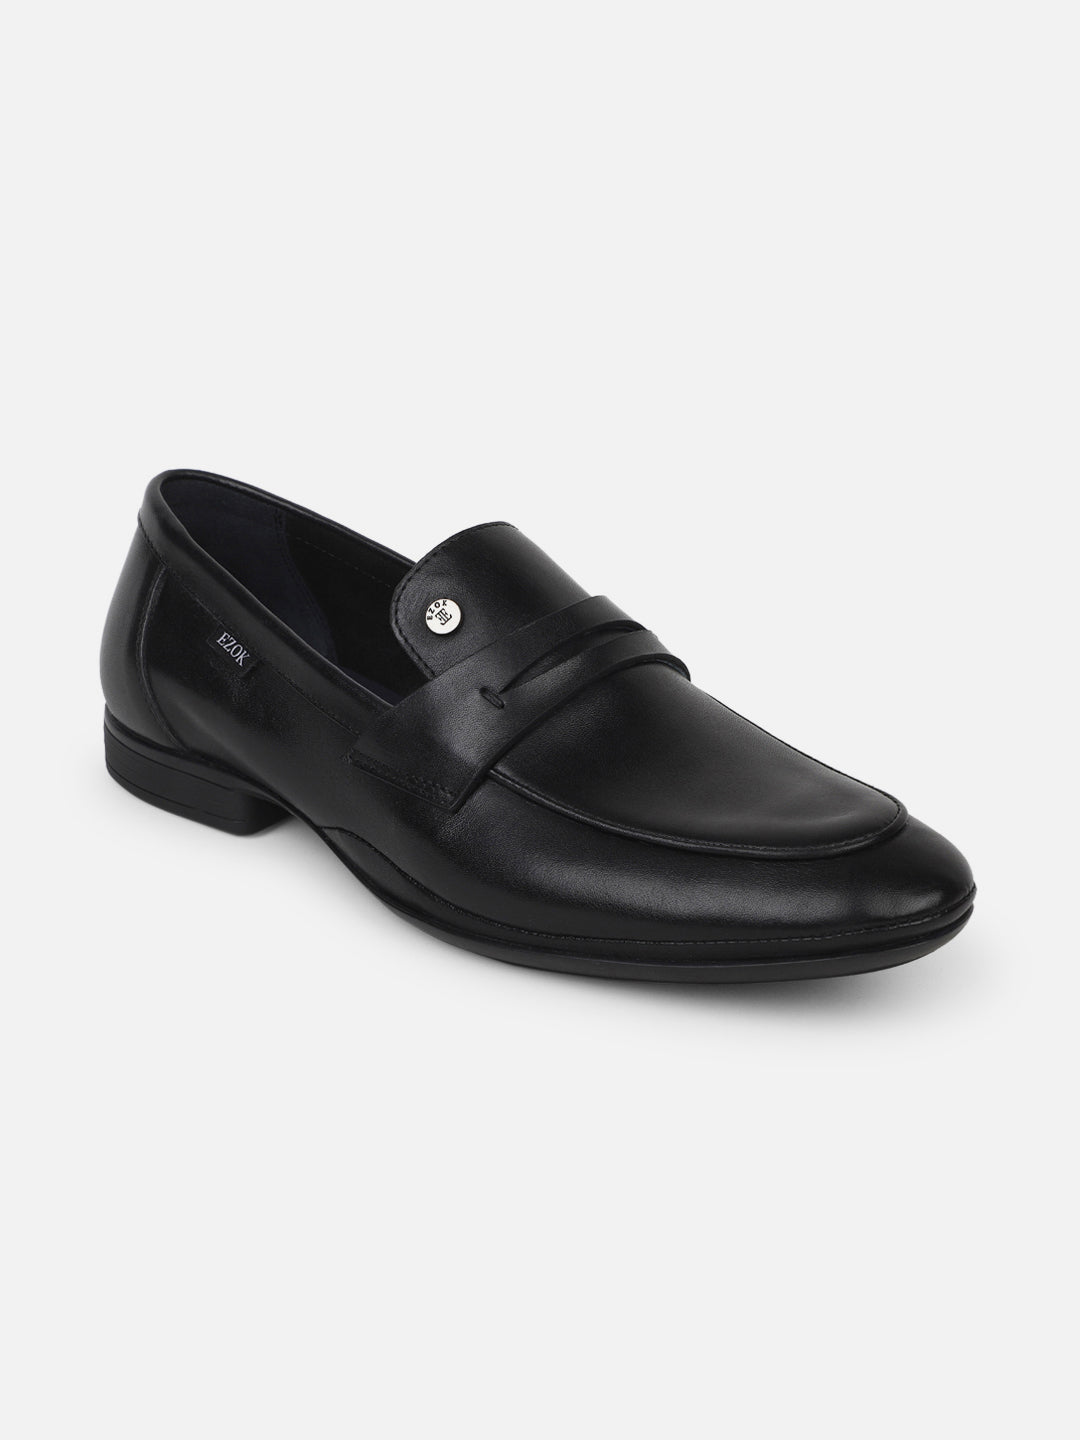 Ezok Men Leather Loafer Mocassins ( Black )